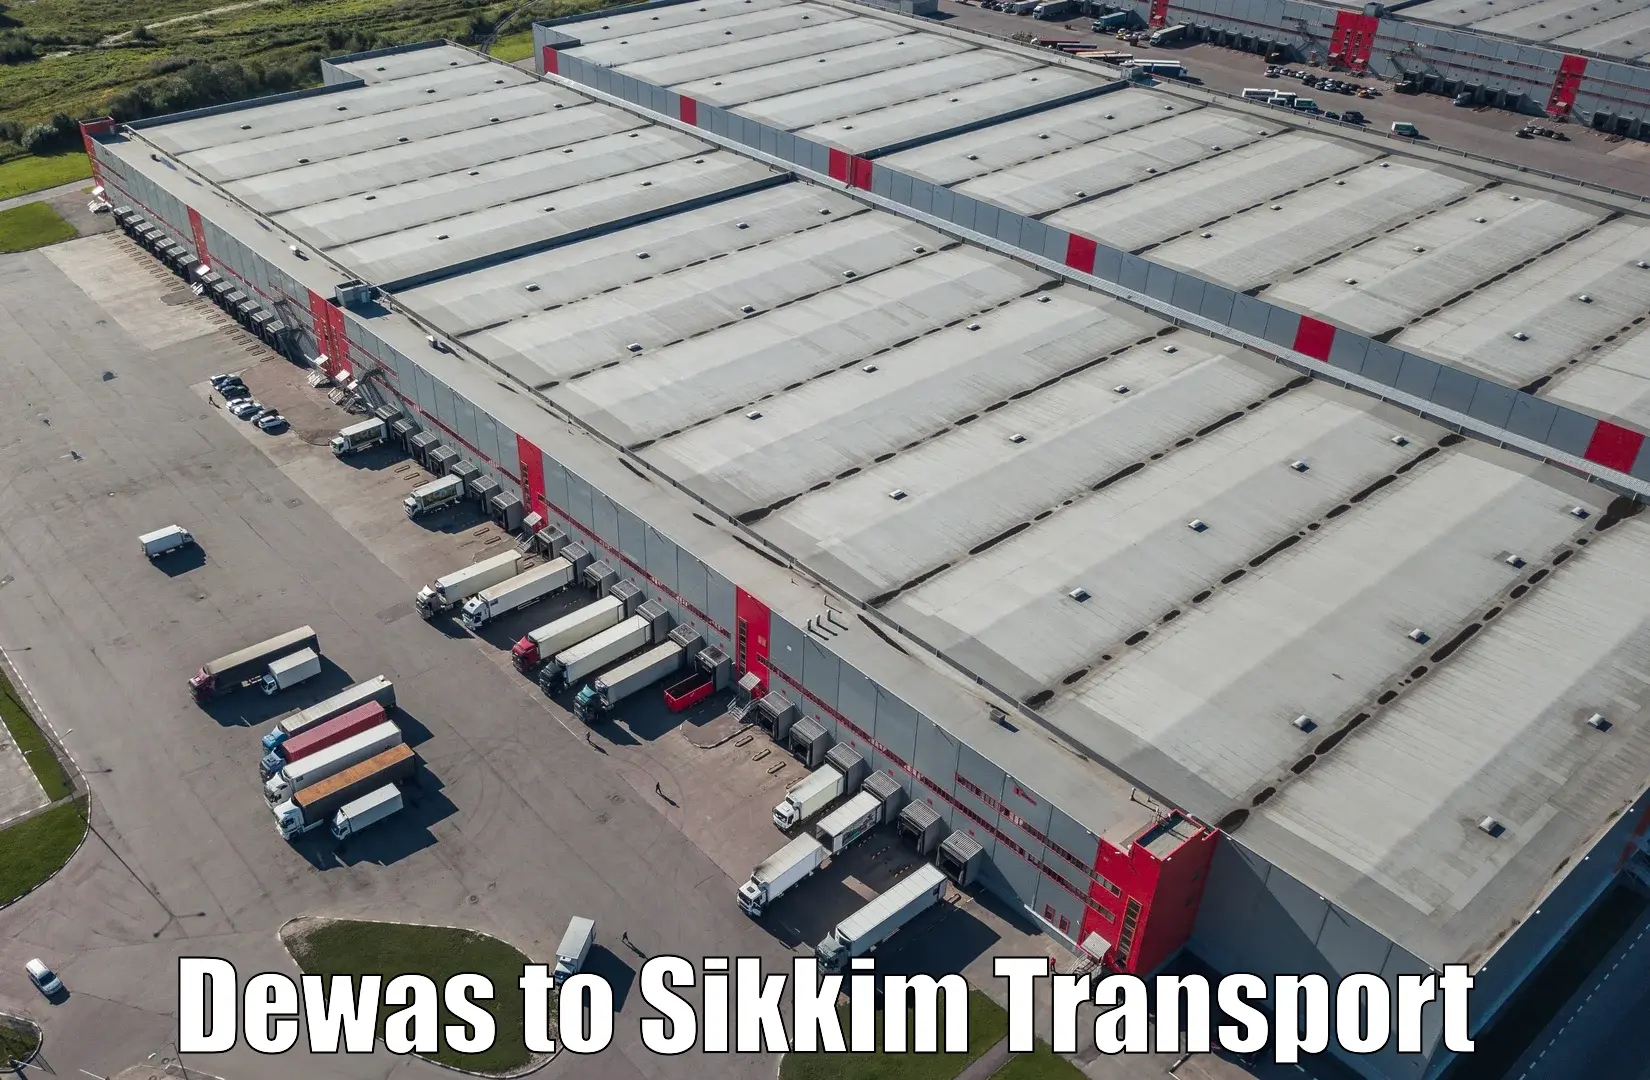 International cargo transportation services Dewas to North Sikkim